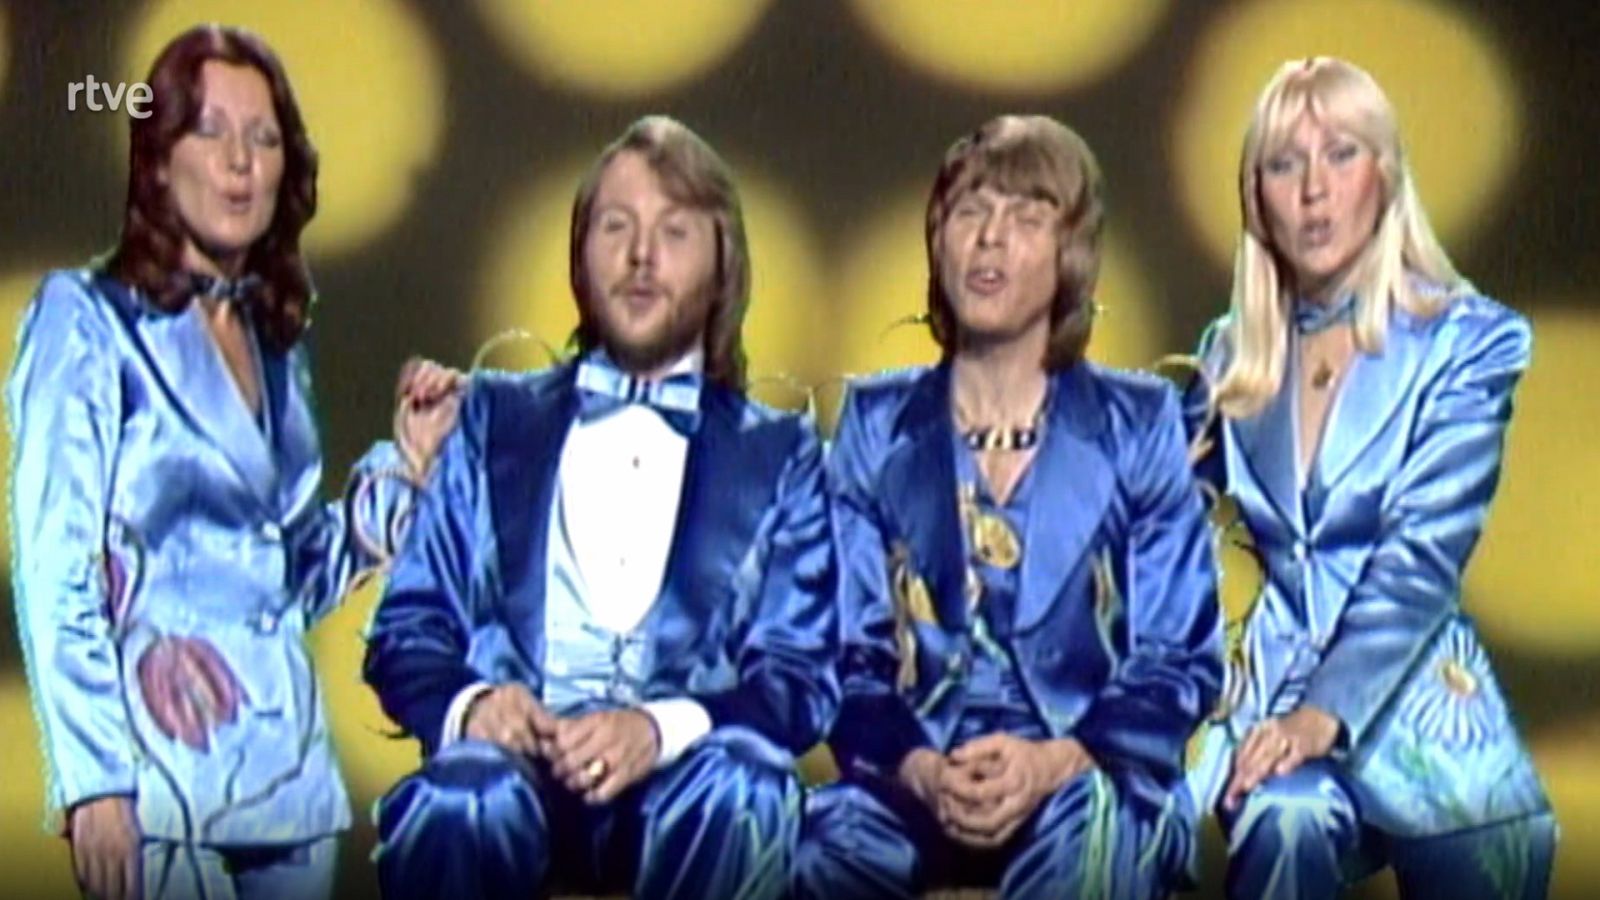 Viaje al centro de la tele - Especial ABBA (1ª parte)